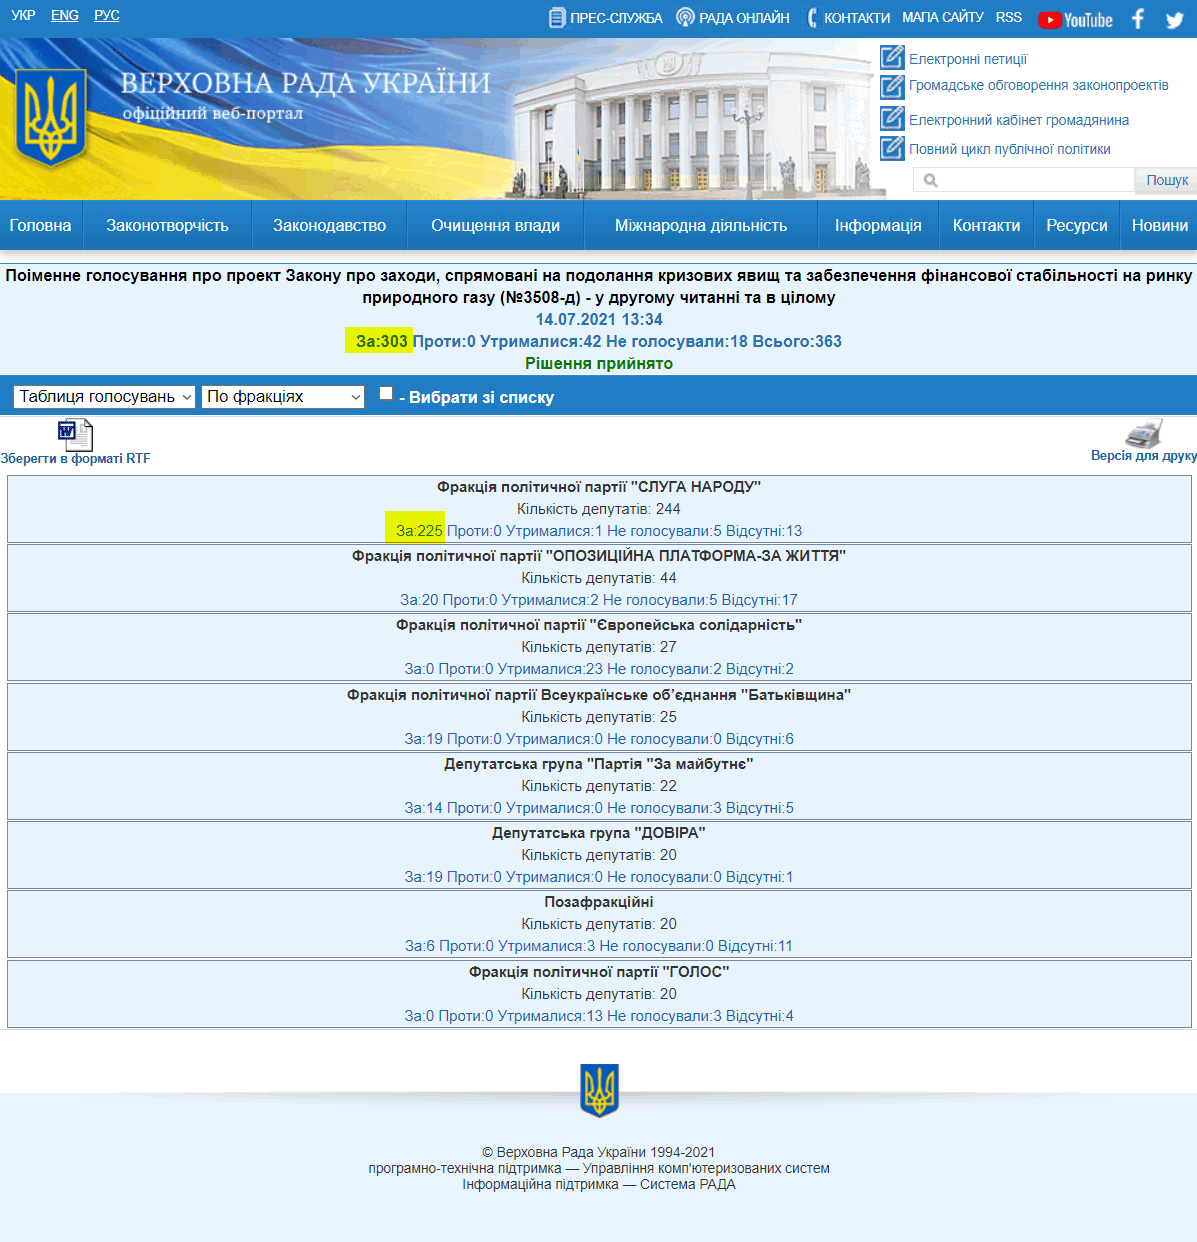 http://w1.c1.rada.gov.ua/pls/radan_gs09/ns_golos?g_id=14744